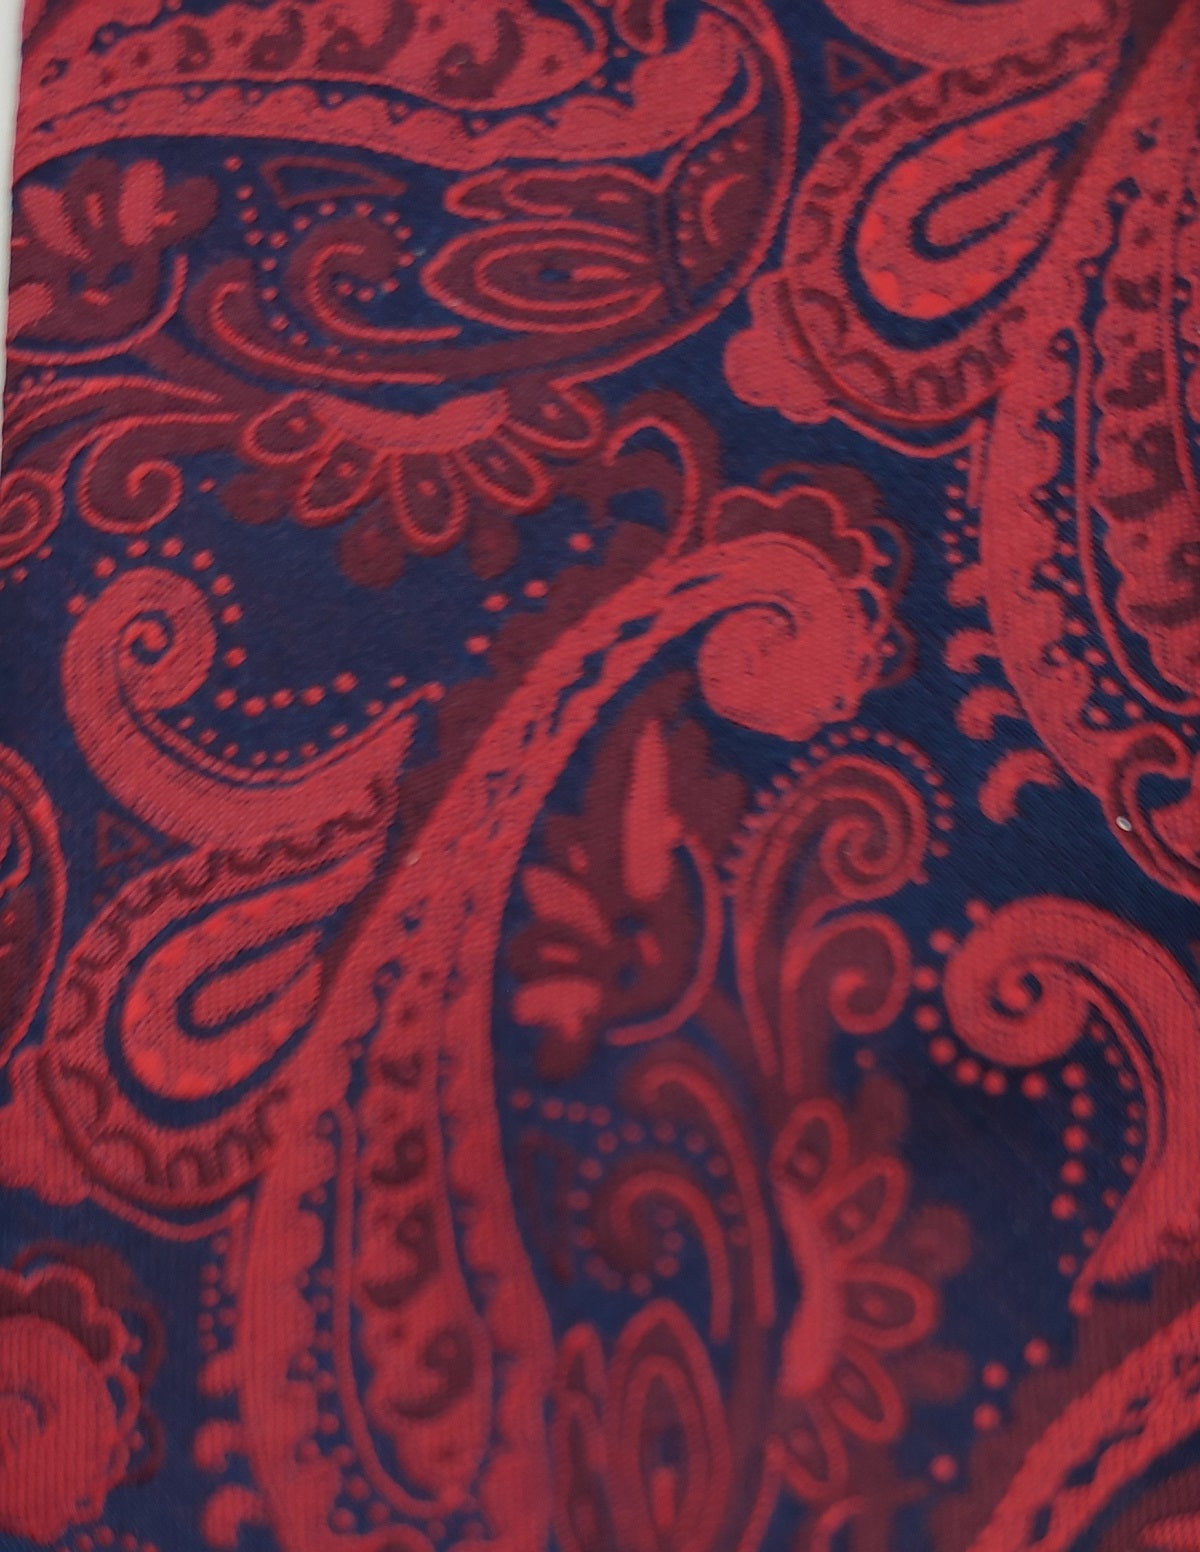 Necktie/Paisley Red